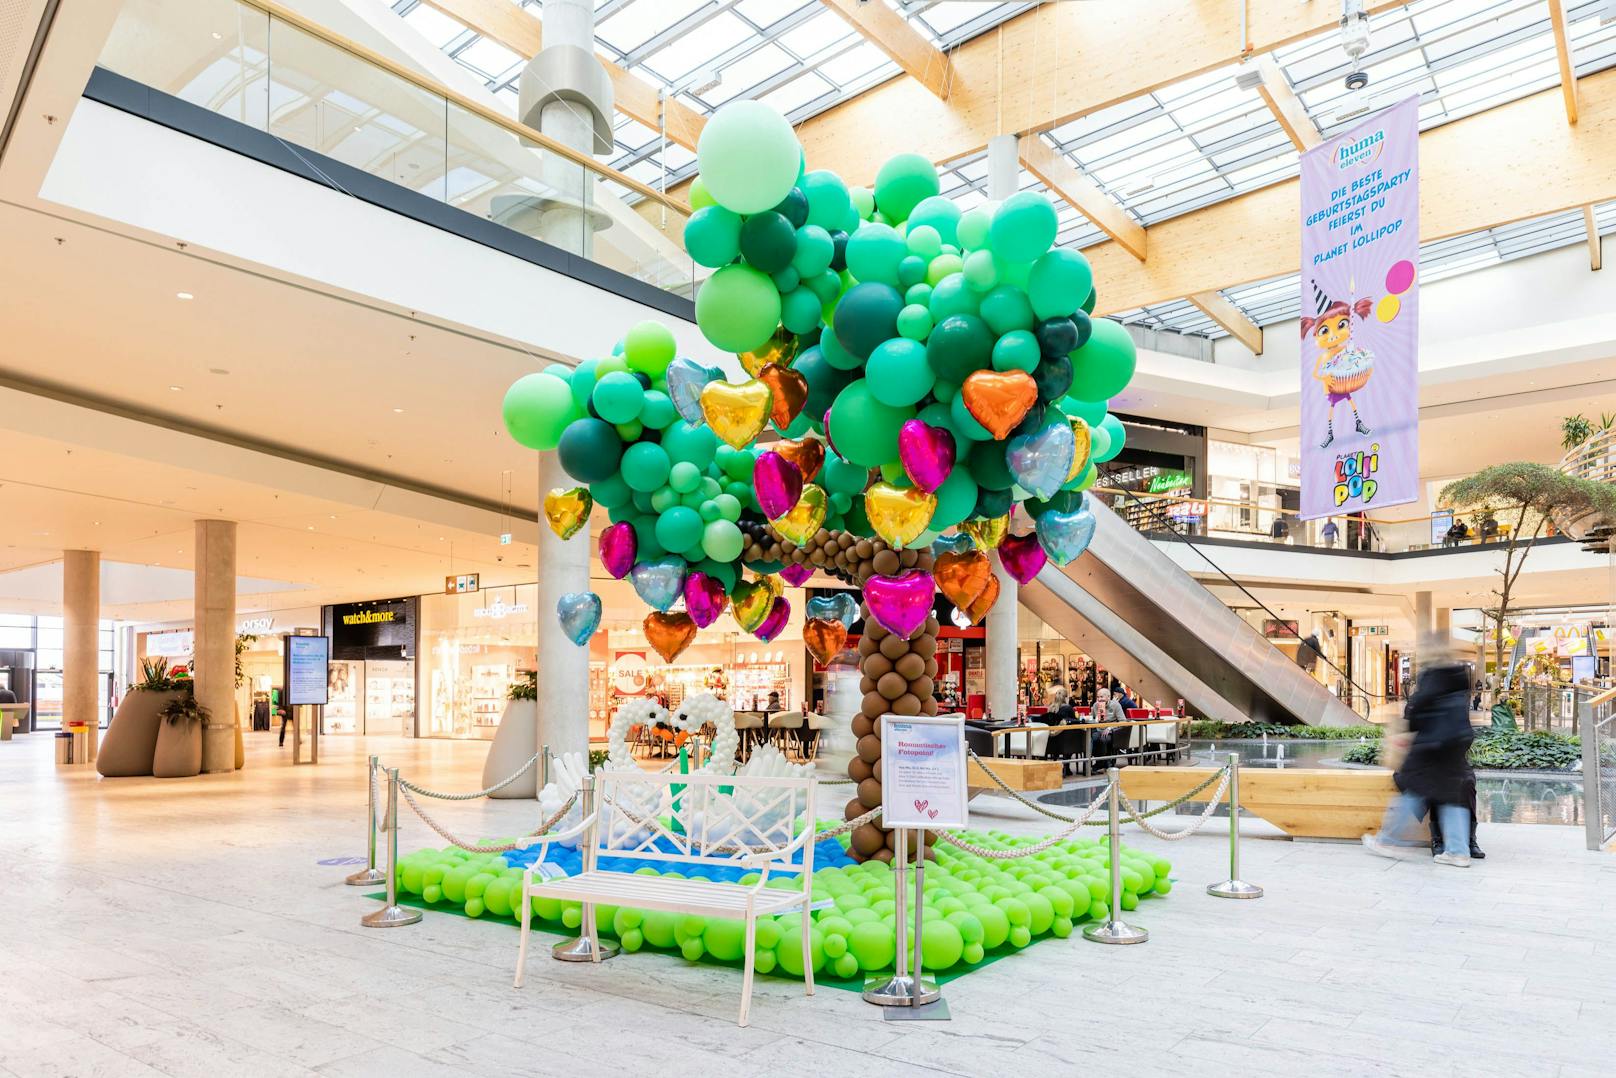 Ins Auge springt auch der XL-Herzerlbaum: Zum Valentinstag bietet das Kunstwerk mit über 3.500 Luftballons einen perfekten Fotohintergrund.